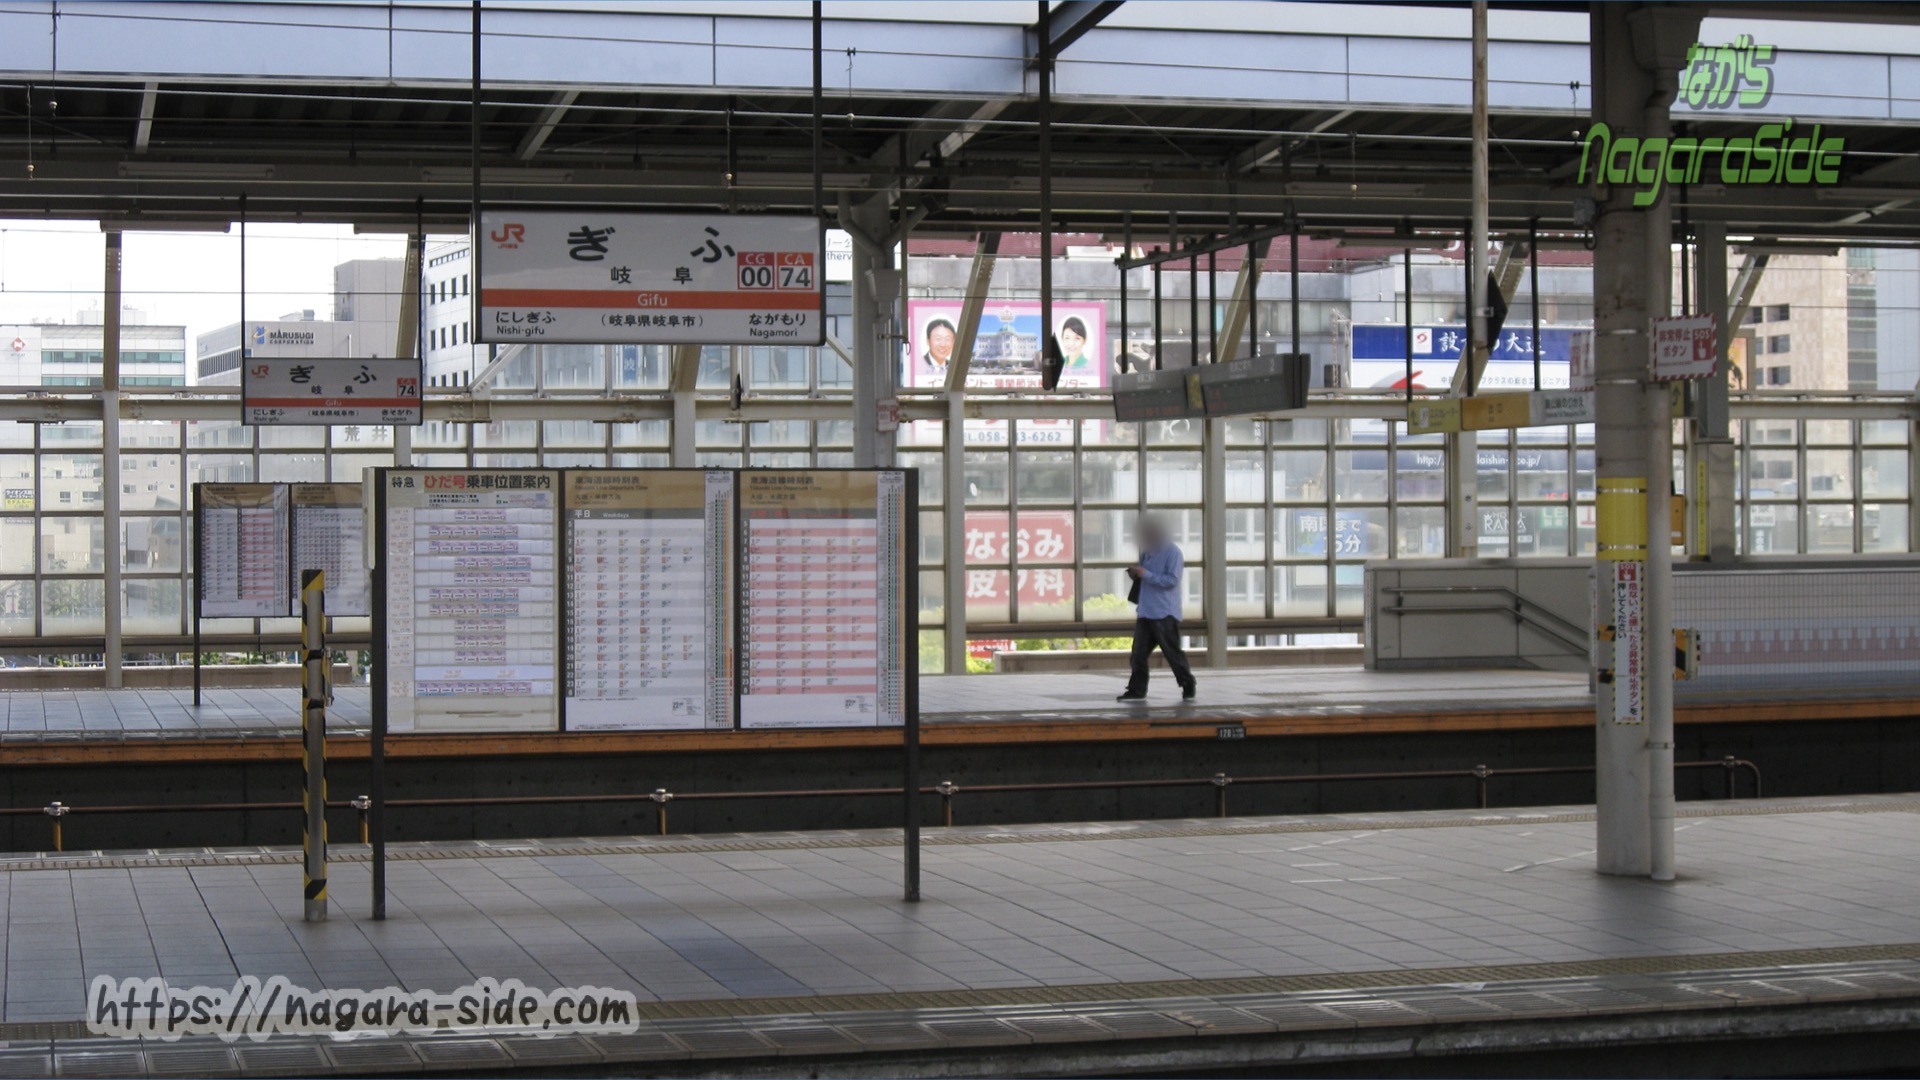 岐阜駅のホーム 時刻表が掲げられていたが今では消滅…